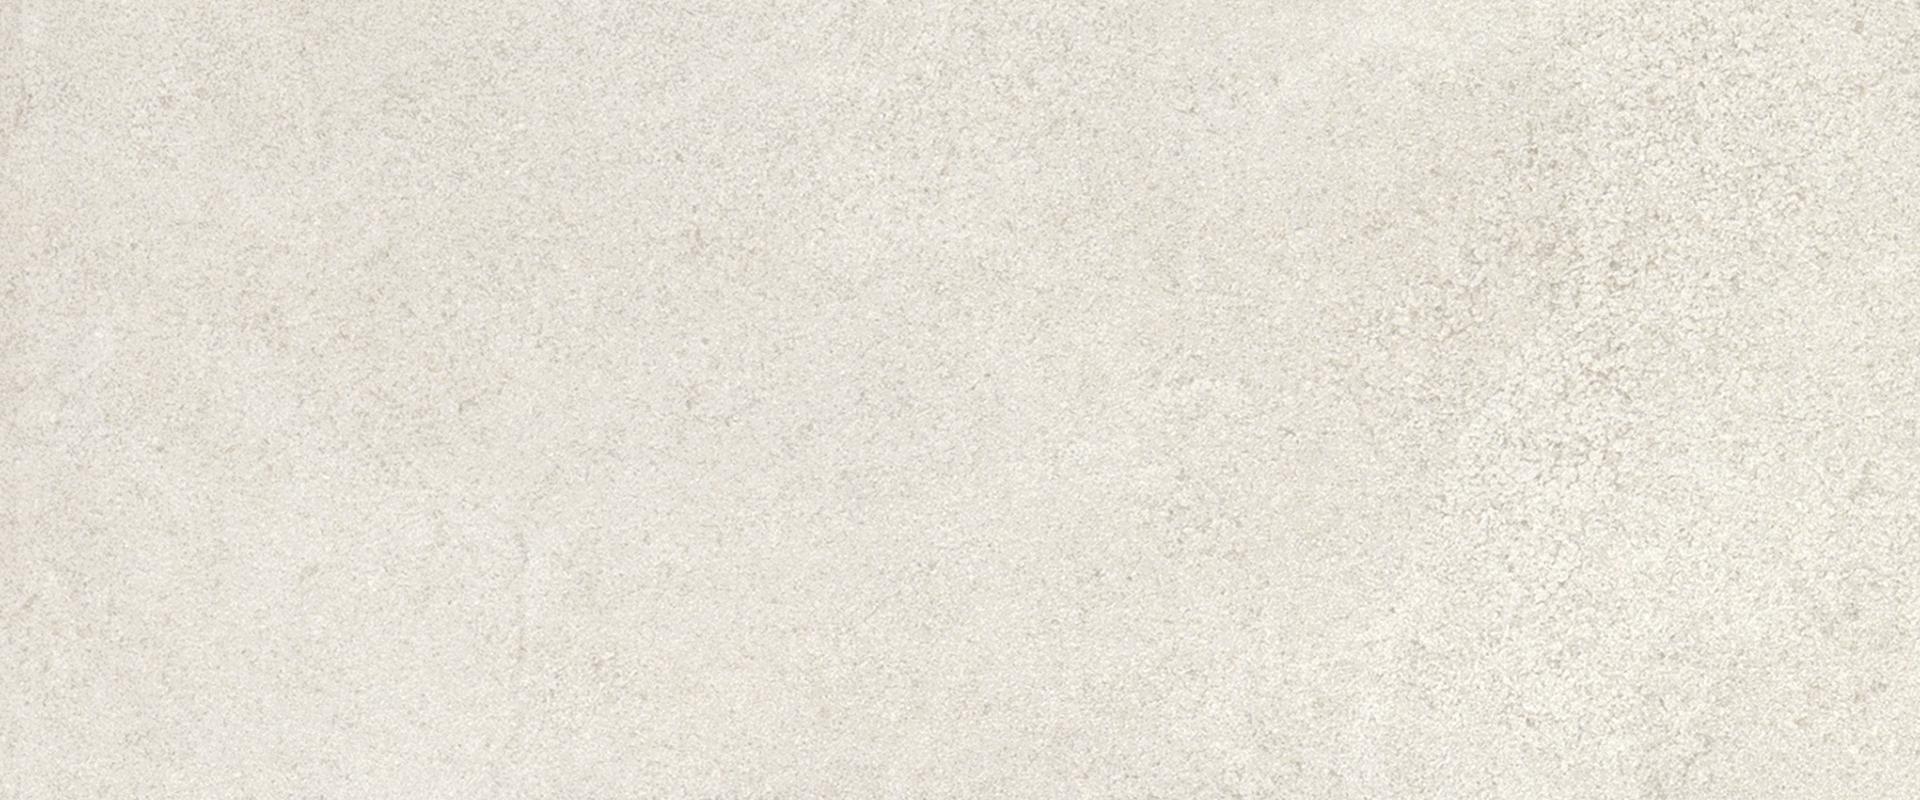 Stone Project: Strutturato White Wall Tile (12"x24"x9.5-mm | strutturato)